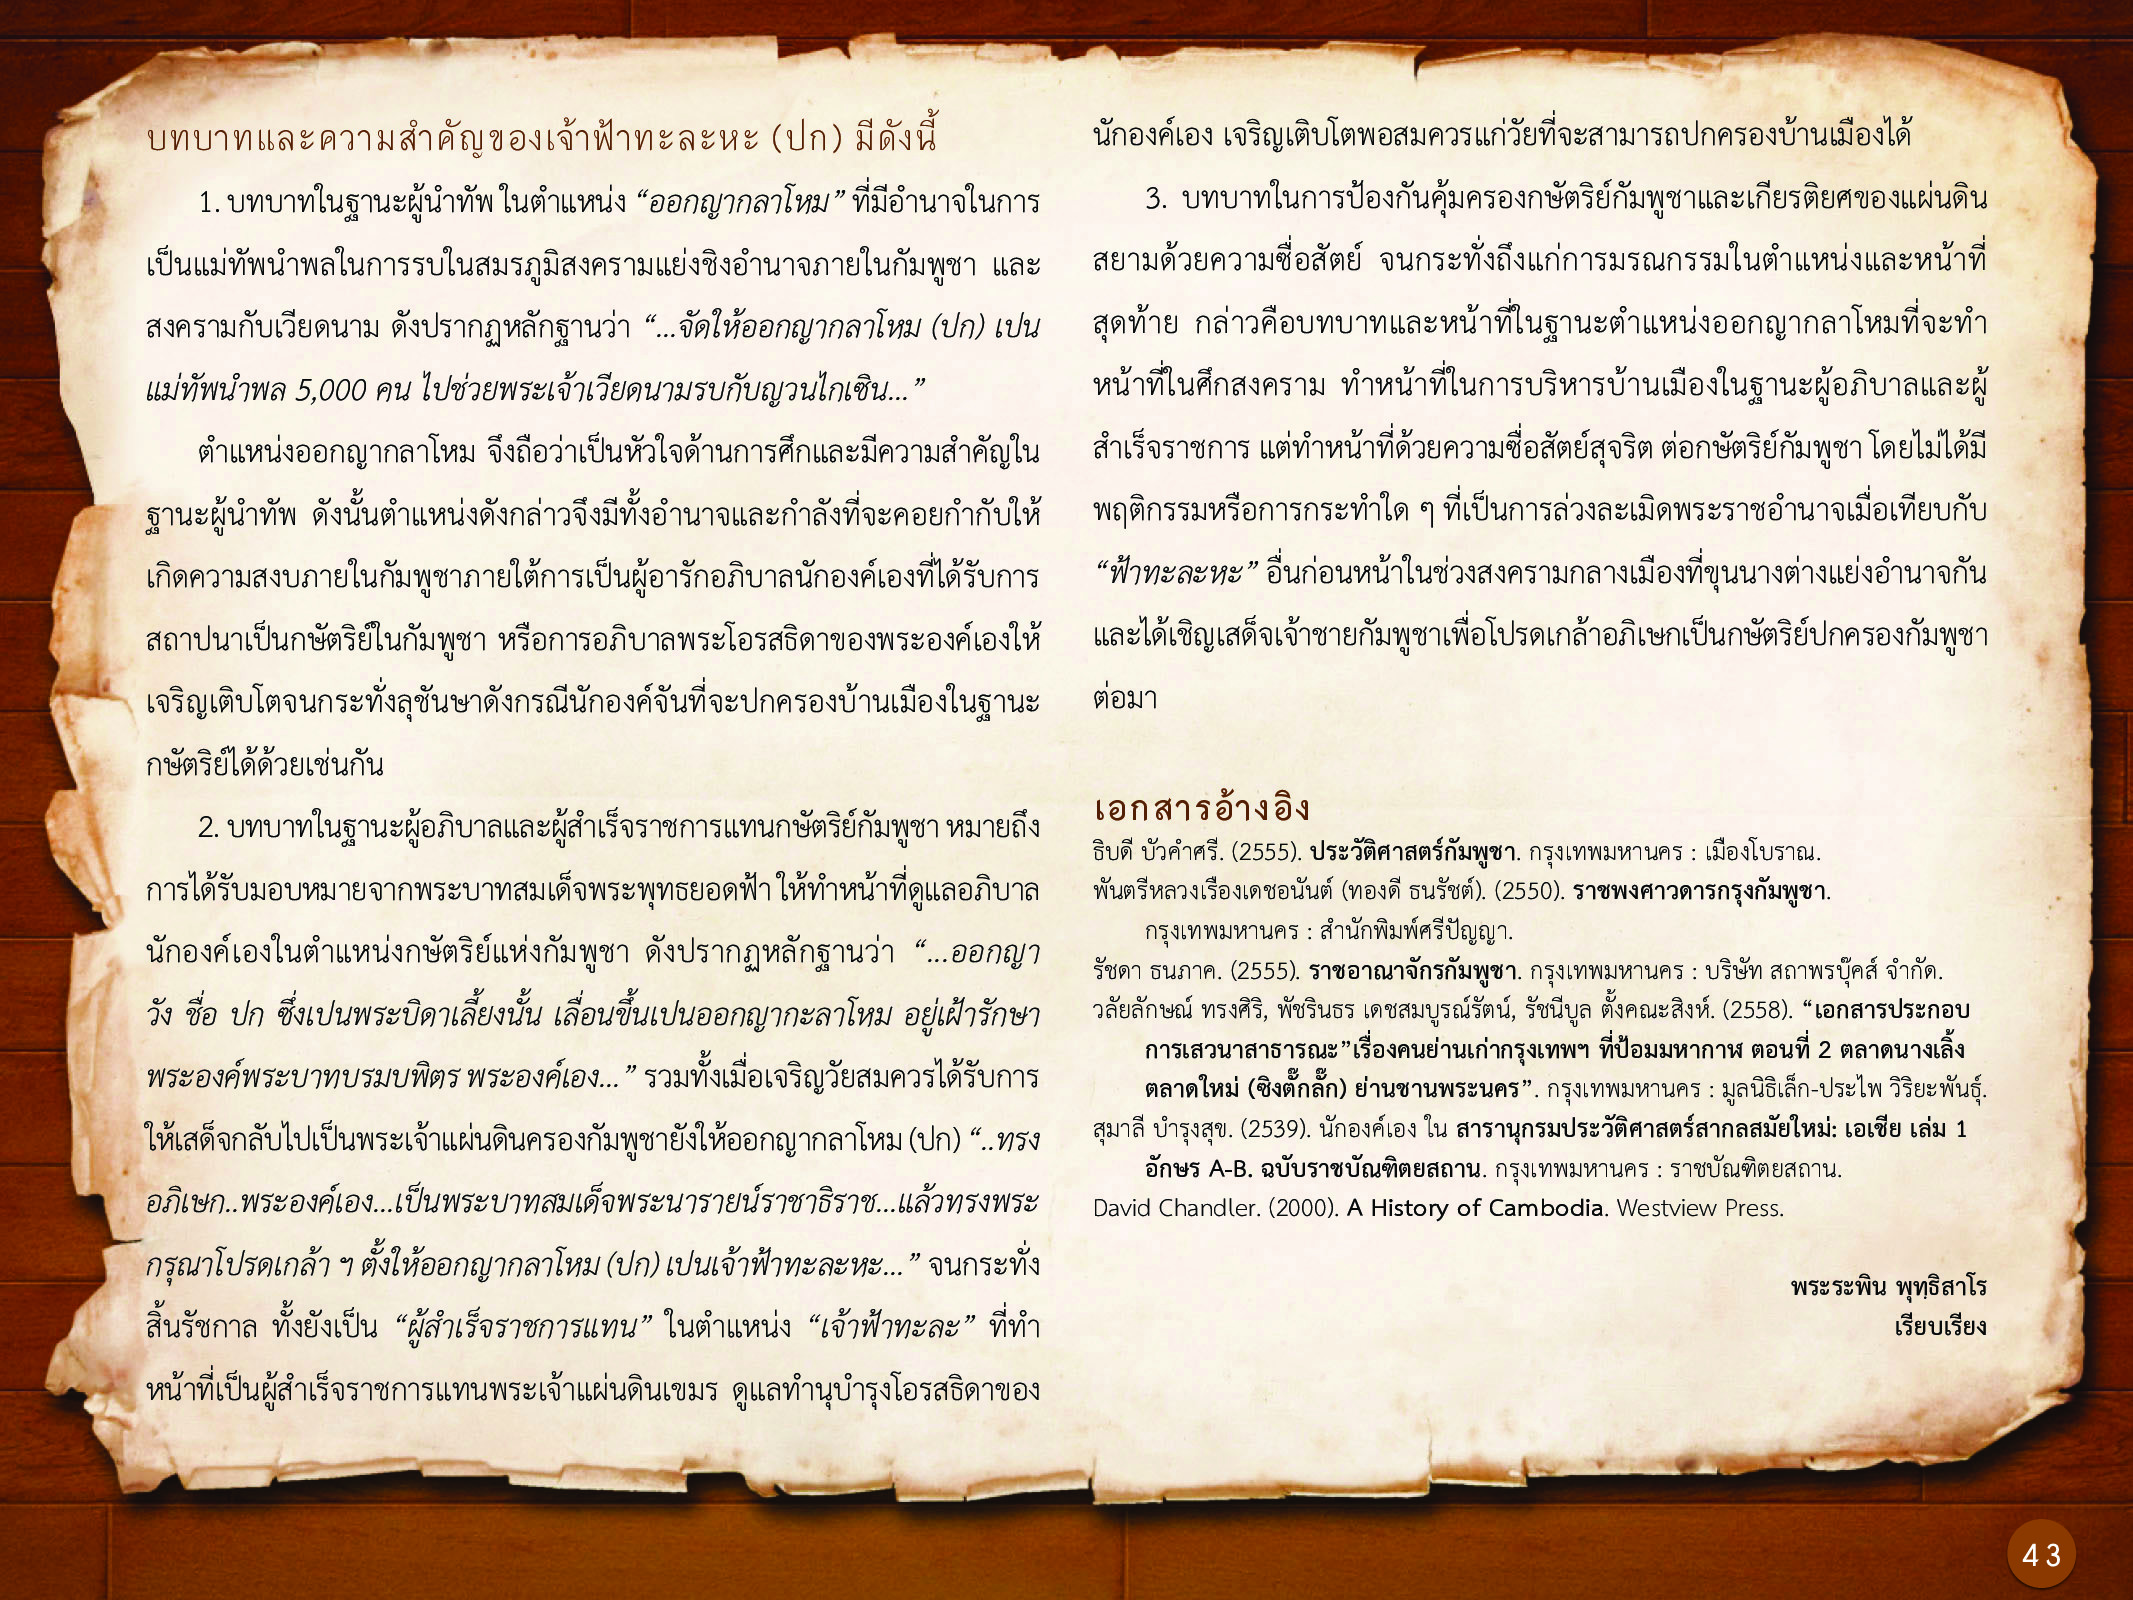 ประวัติศาสตร์กรุงธนบุรี ./images/history_dhonburi/43.jpg